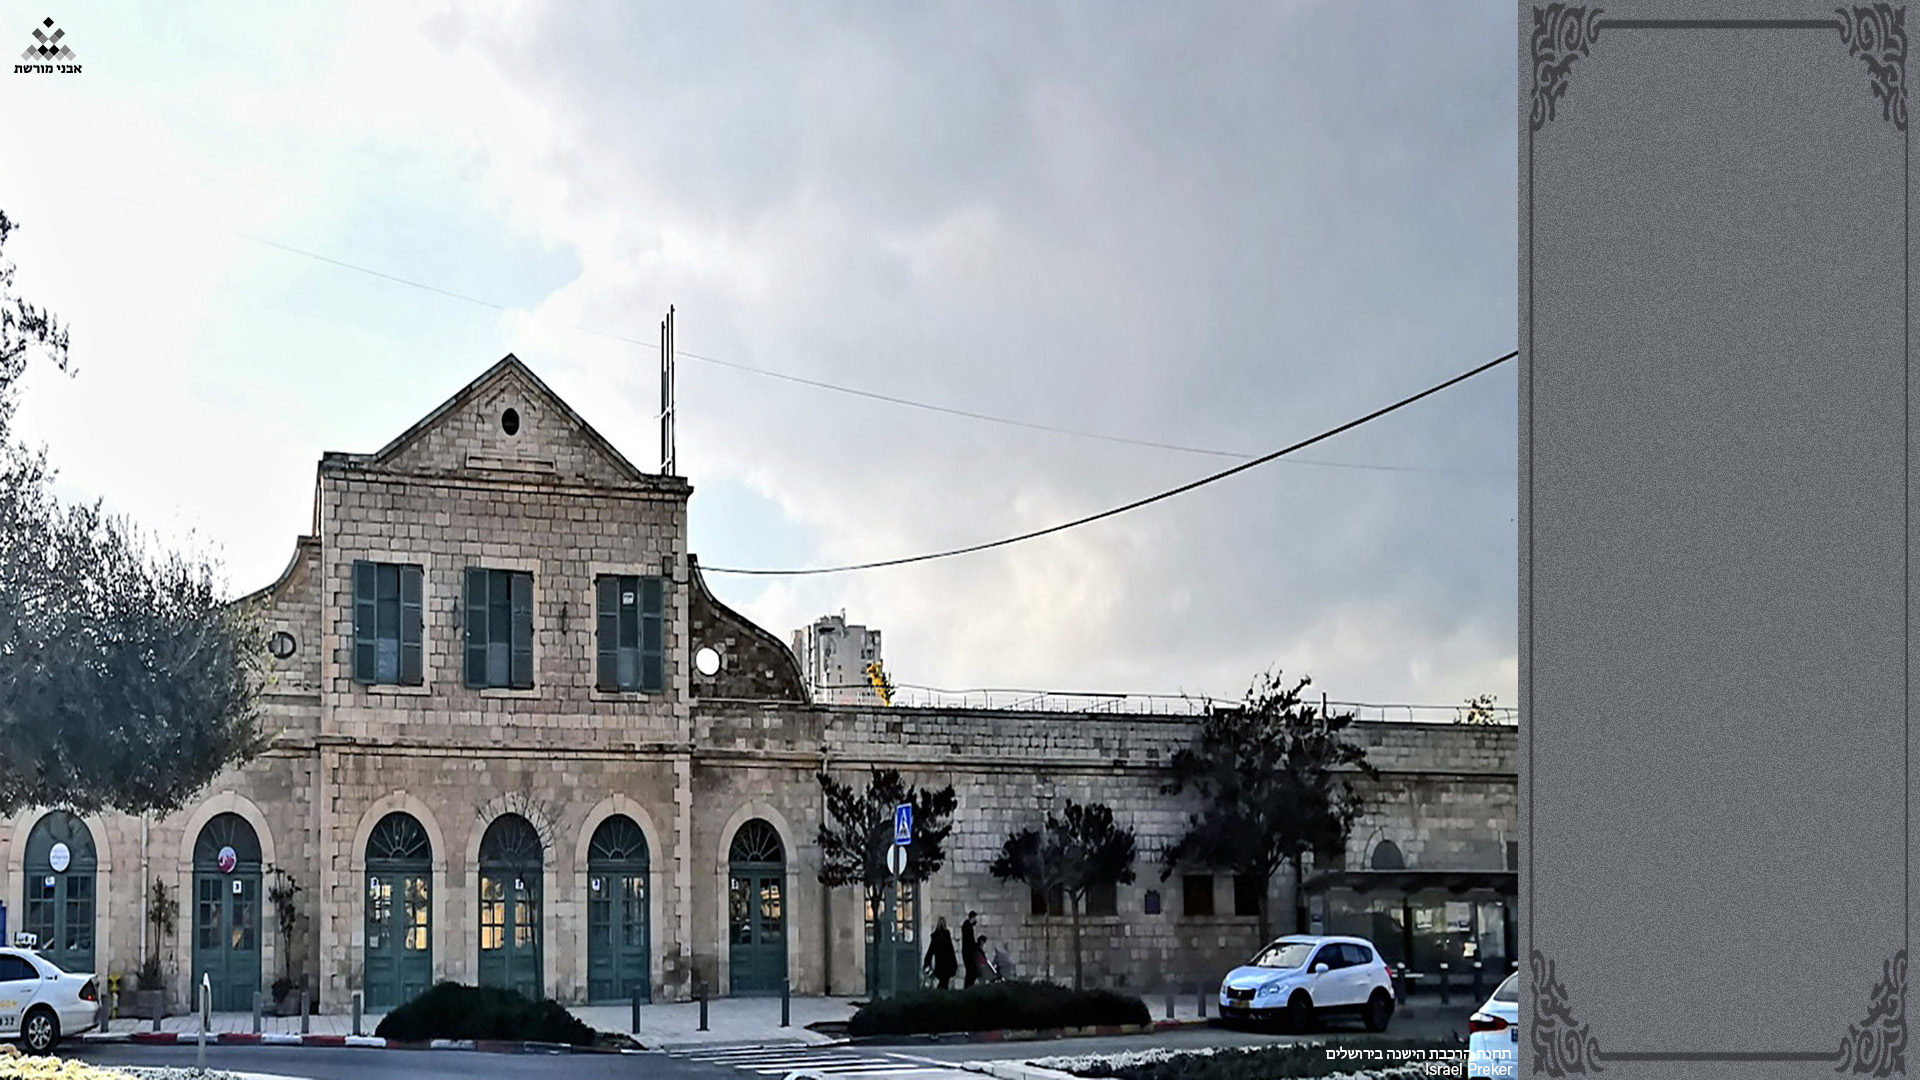 תחנת הרכבת הישנה בירושלים